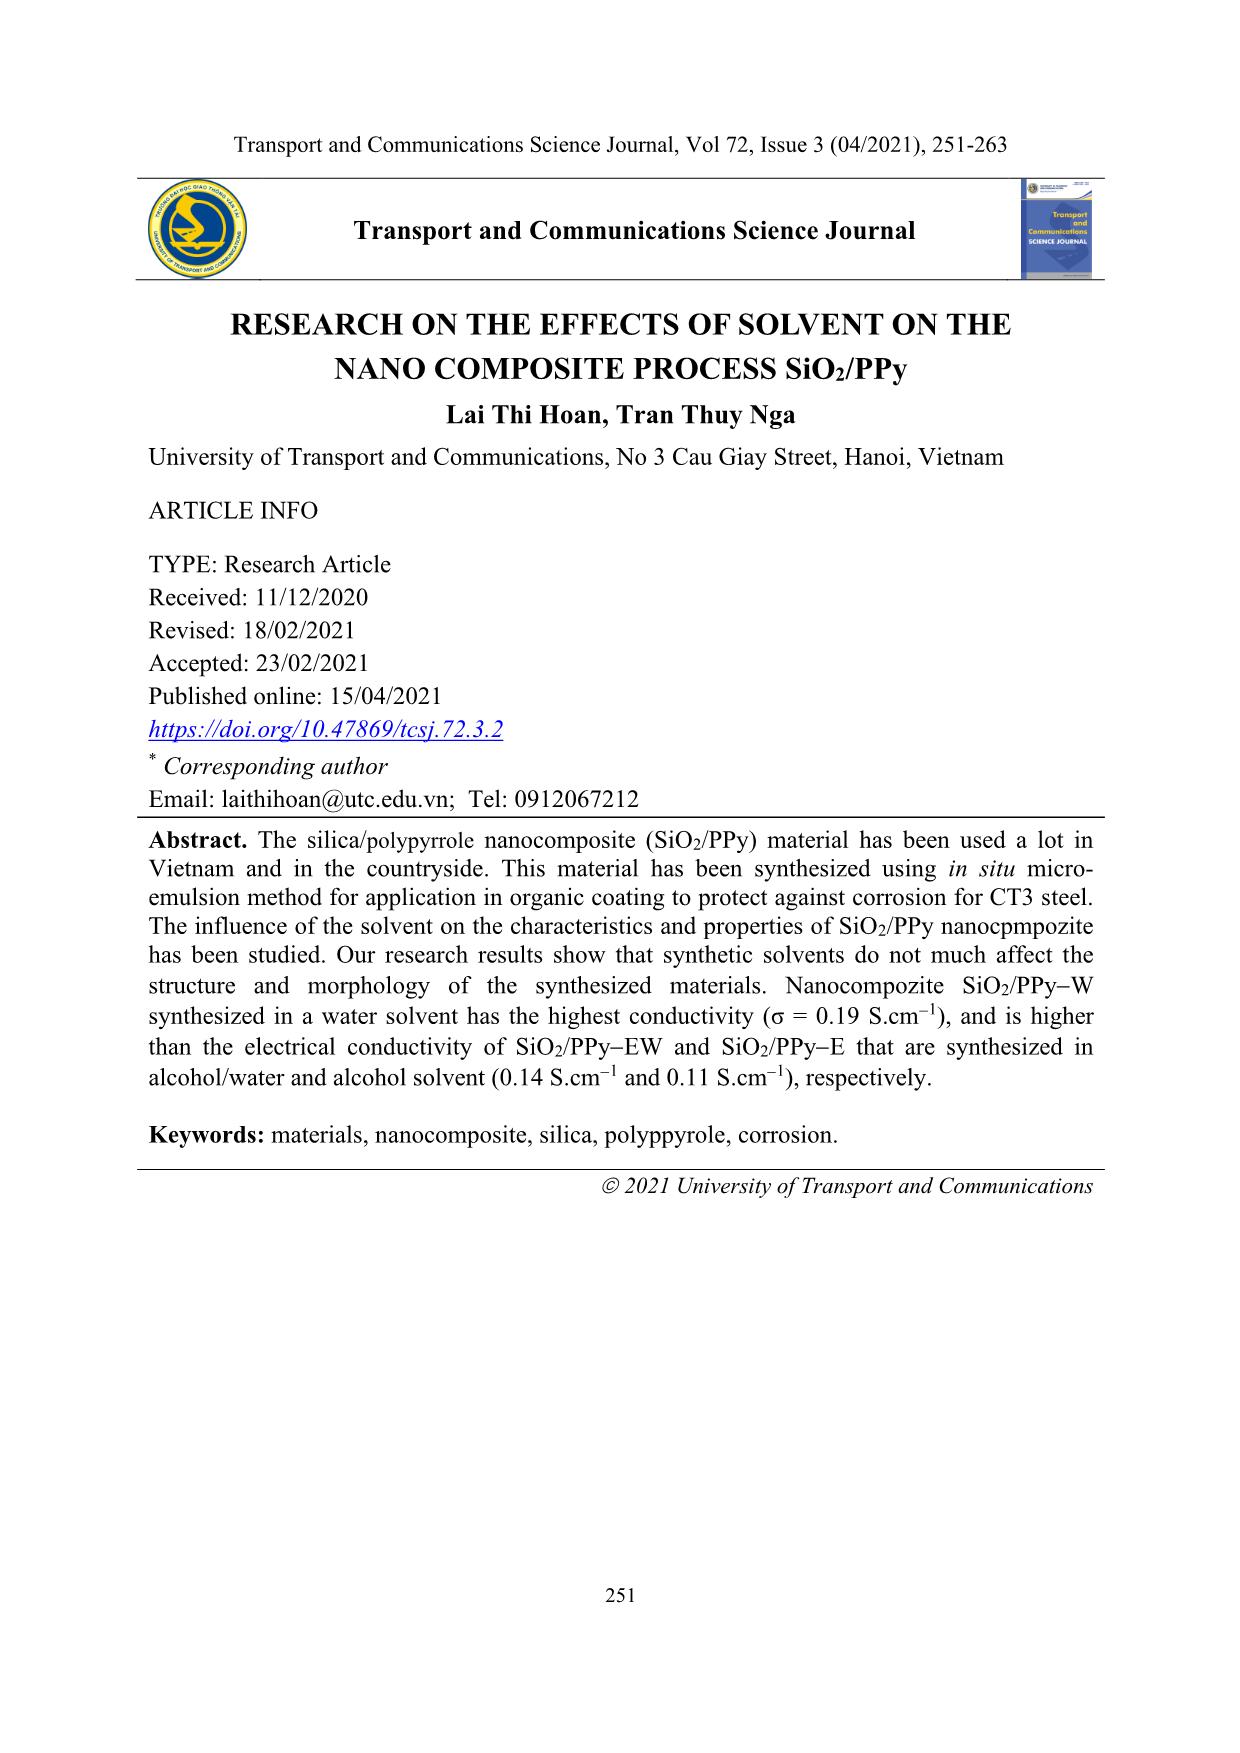 Nghiên cứu sự ảnh hưởng của dung môi đến quá trình tổng hợp nano composite SiO₂/PPY trang 1